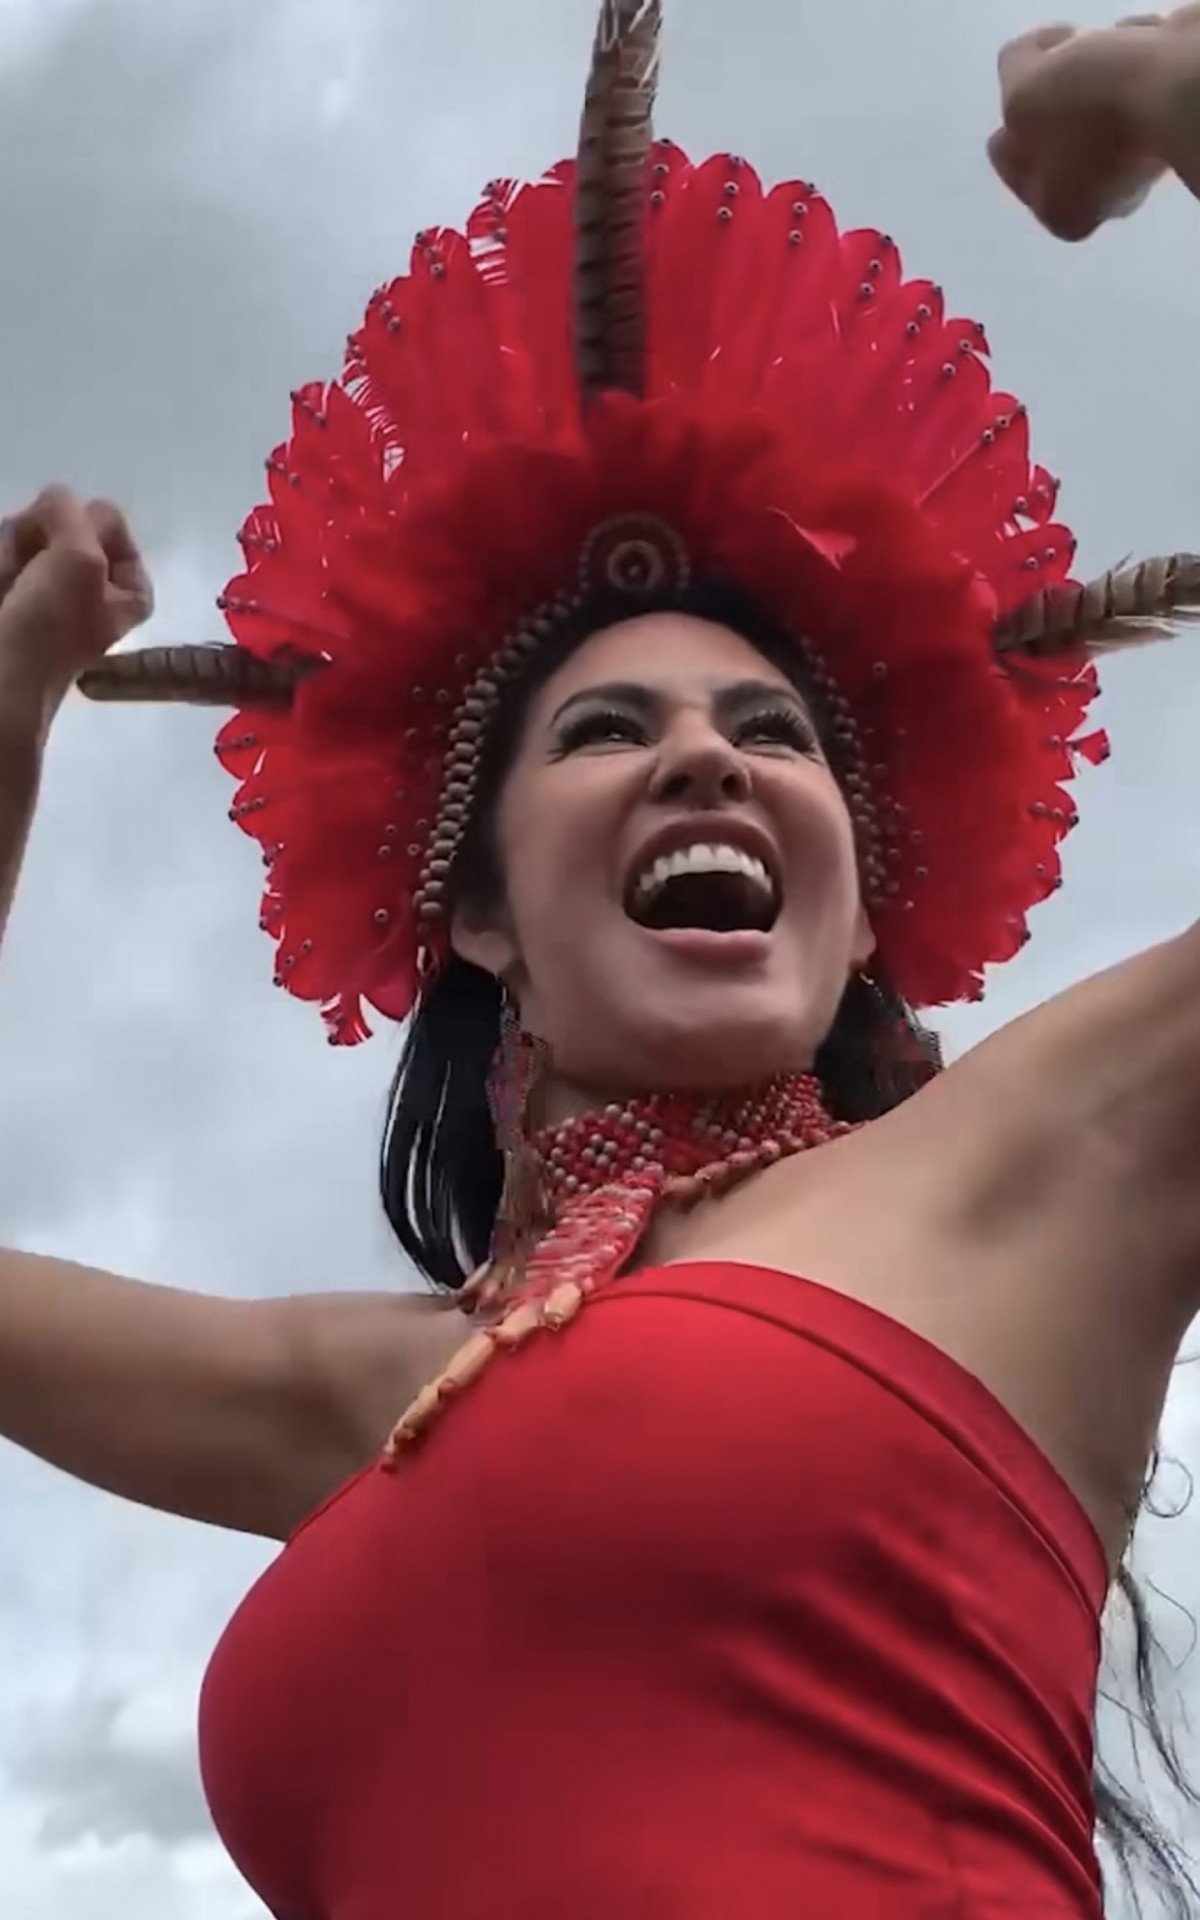 Isabelle se emociona com festa por sua chegada em Manaus: 'Lindo ver vocês fazendo a flecha' | Celebridades